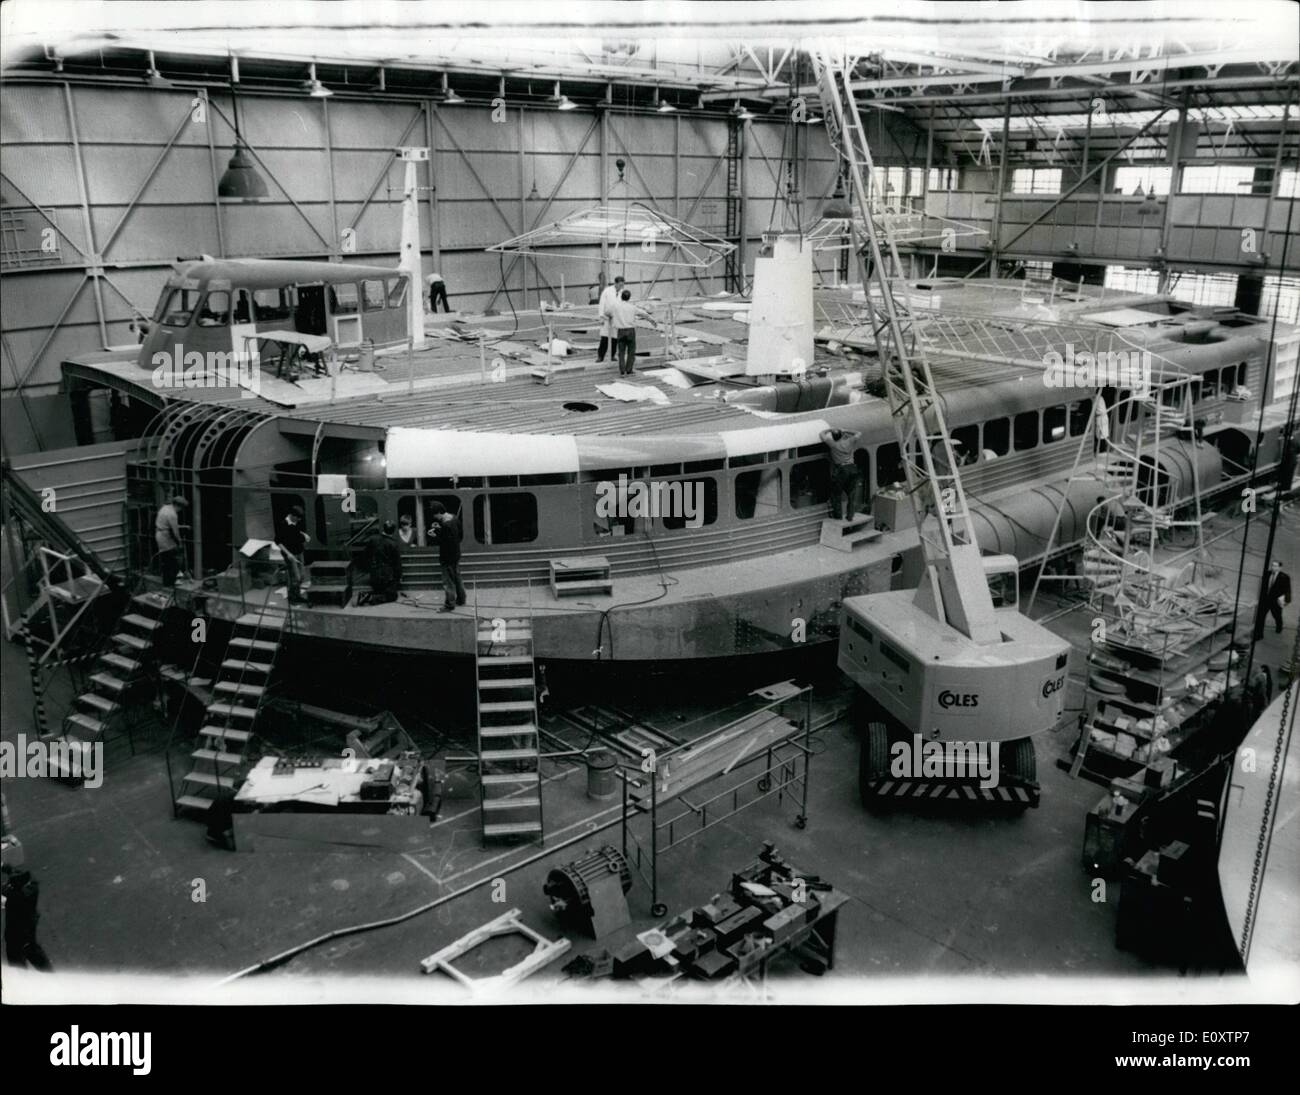 Septembre 09, 1967 - Un aéroglisseur géant tirent à leur fin. : 4 165 tonnes Sr. N4 aéroglisseur, un passager/car-ferry rapide conçu pour des opérations sur 'Ouvrir' mer , les ferries sont à divers stades de production à traversées, sont à différents stades de la production à l'aéroglisseur de la Sociétés d'œuvres à Cowes (île de Wight, l'un d'eux est presque terminée. Il s'agit d'exigences. Les modèles typiques : tous les passagers sur les routes d'abandon et un passager/version automobile transportant 256 personnes assises et 30 voitures. En outre Sr. N4 peut être utilisé pour transporter des marchandises Banque D'Images